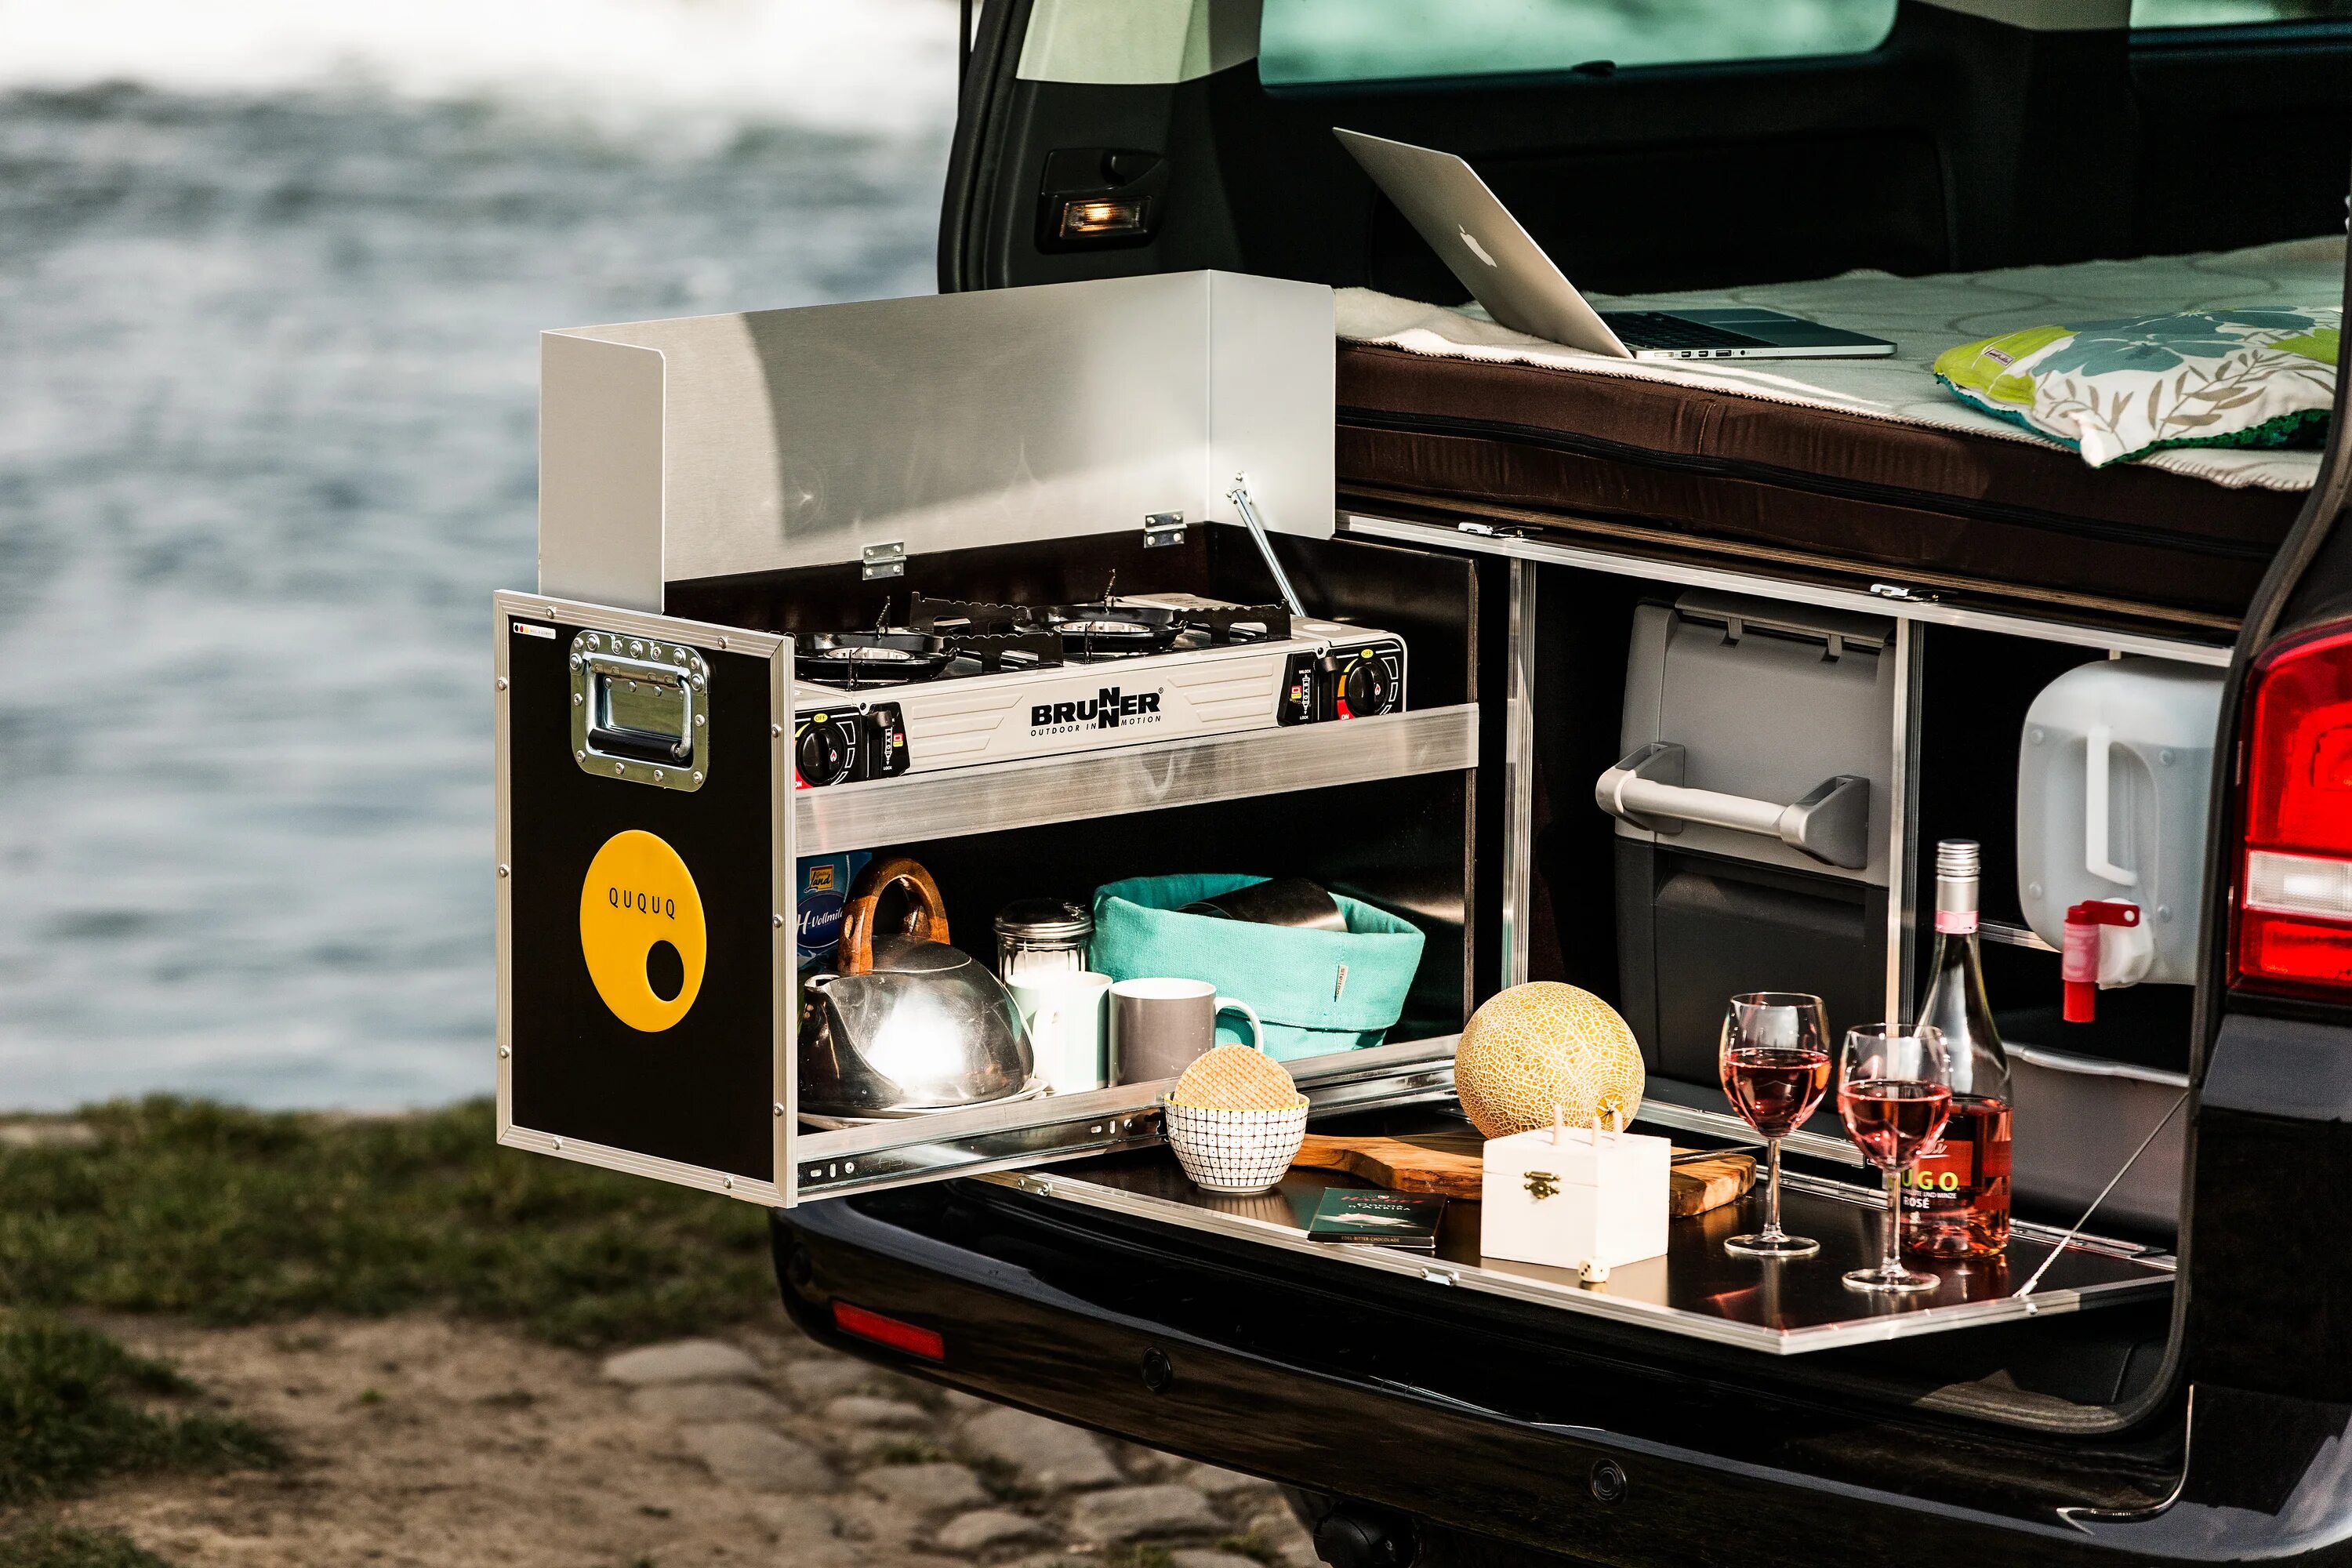 QUQUQ Campingbox. Кухонный модуль VW t4. Кухня модуль кемпинг. Машина для кемпинга. Camp box